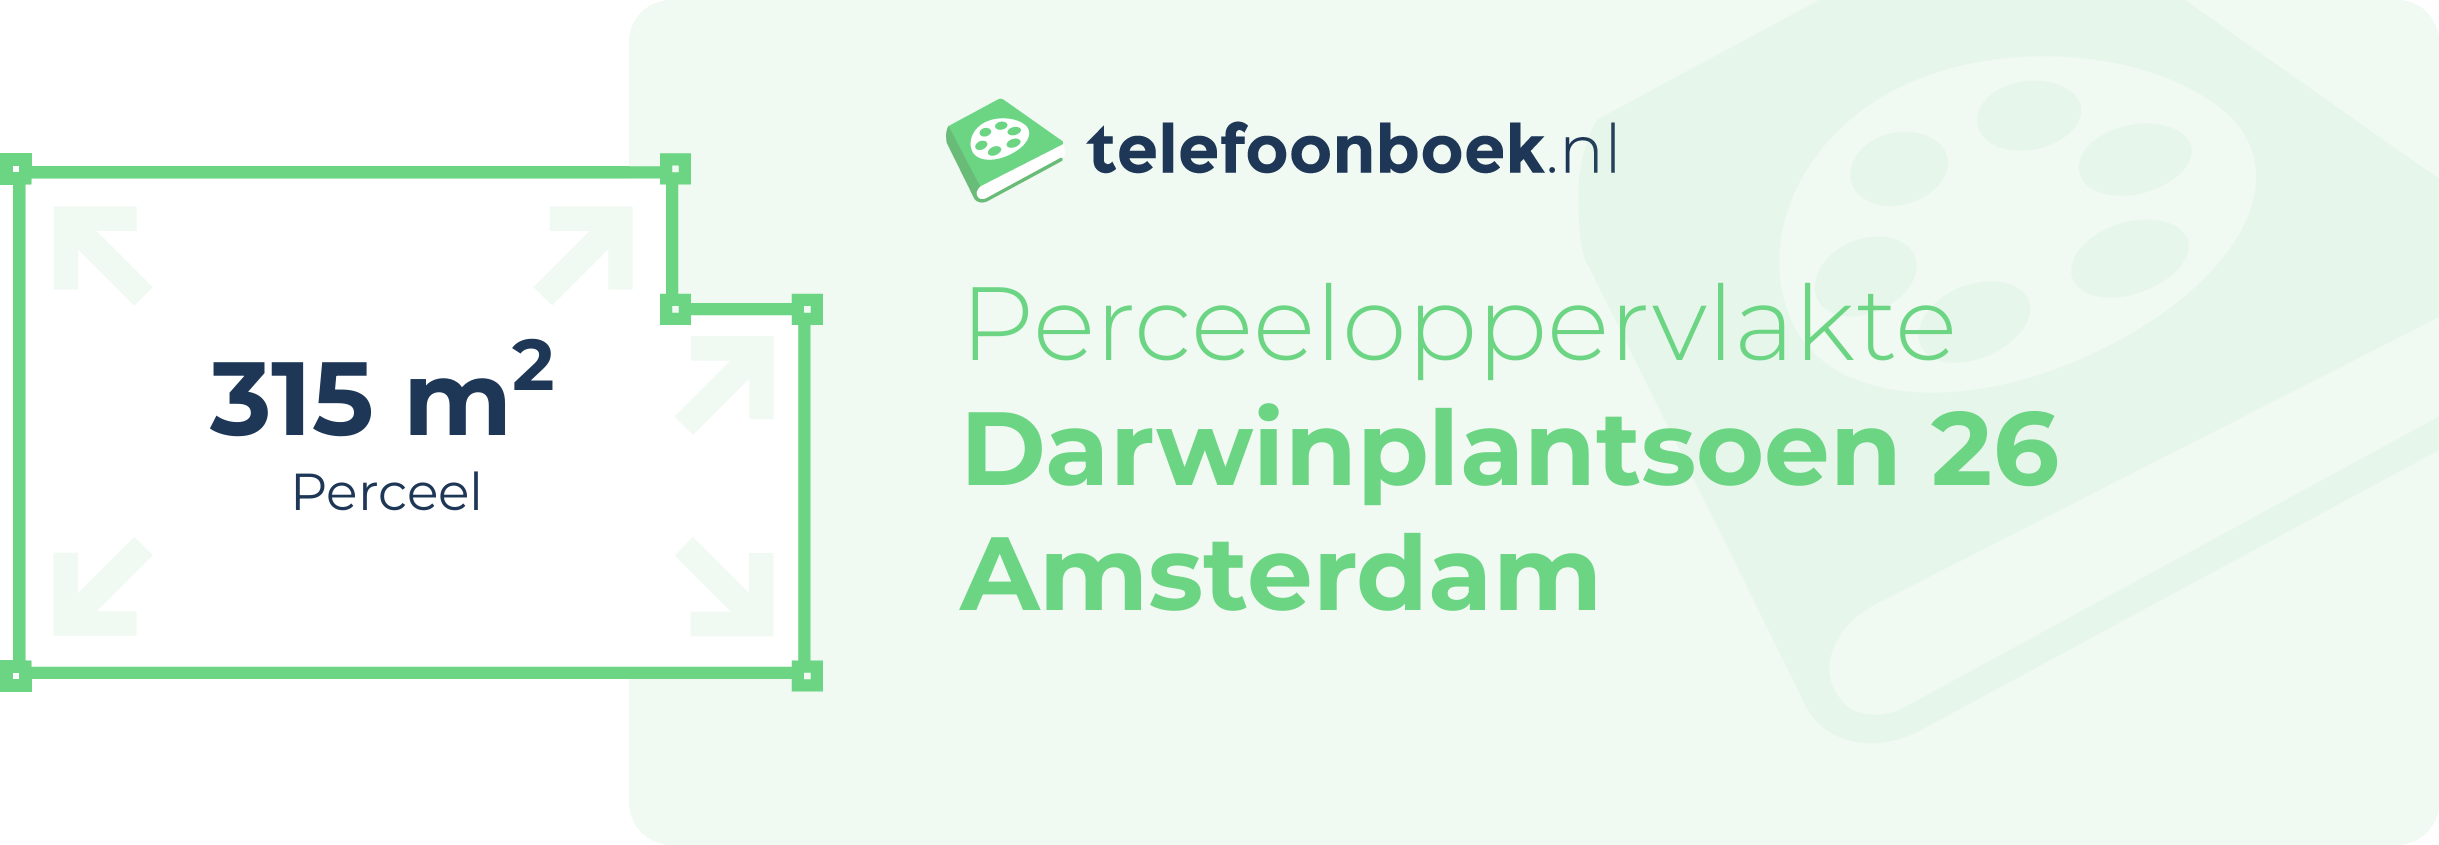 Perceeloppervlakte Darwinplantsoen 26 Amsterdam